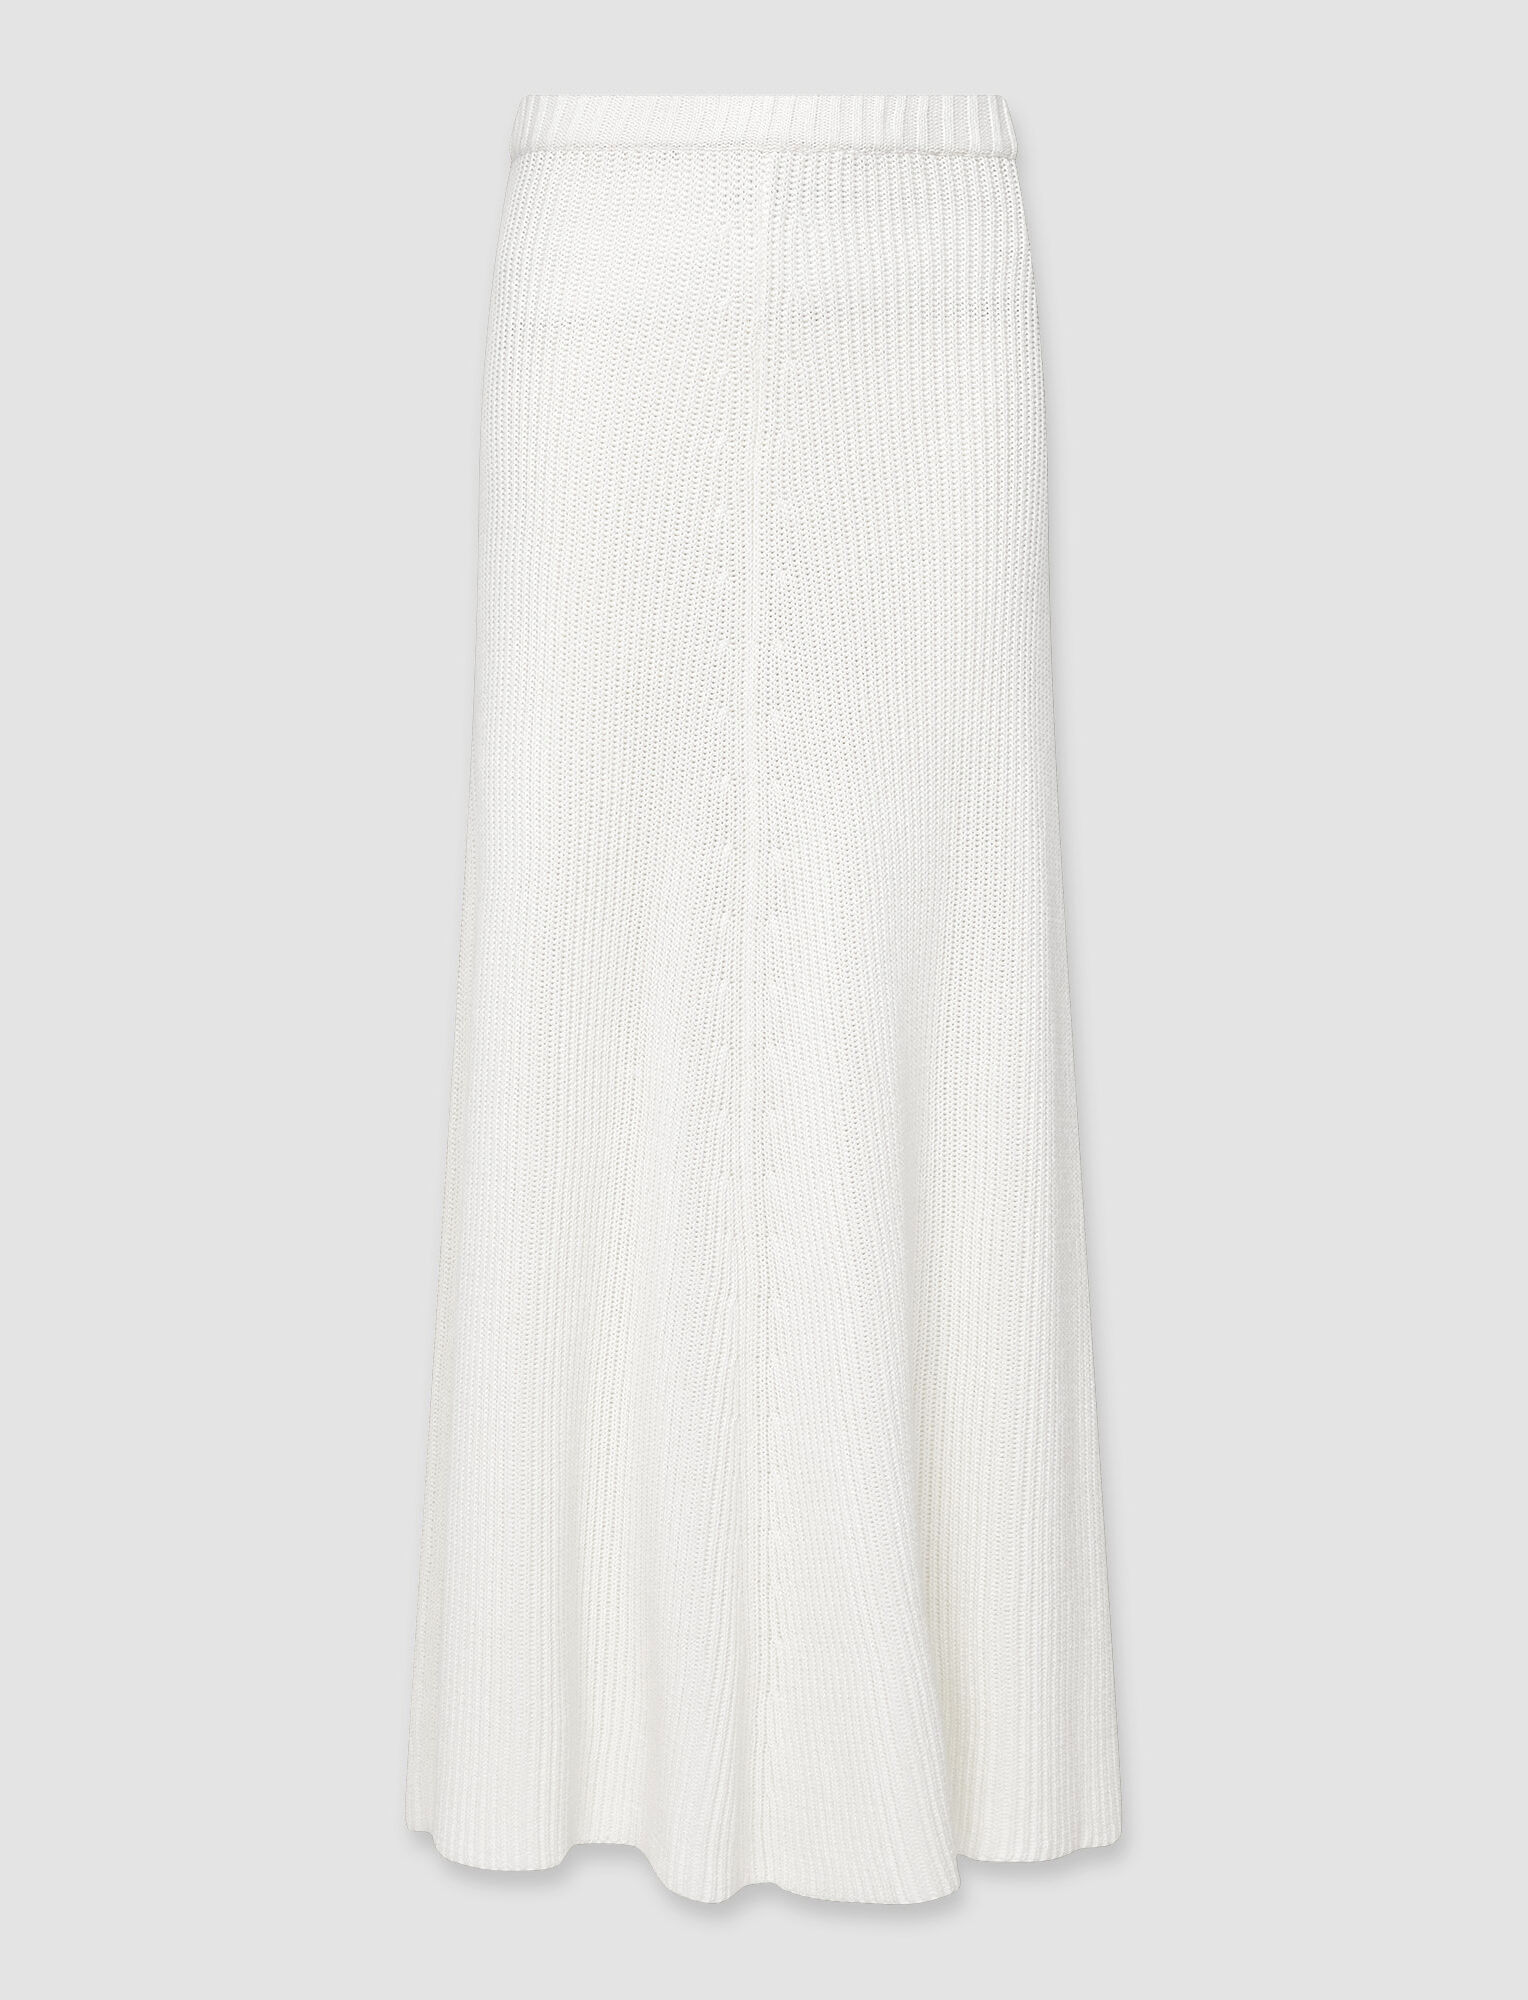 Joseph, Egyptian Cotton Skirt, in Ivory